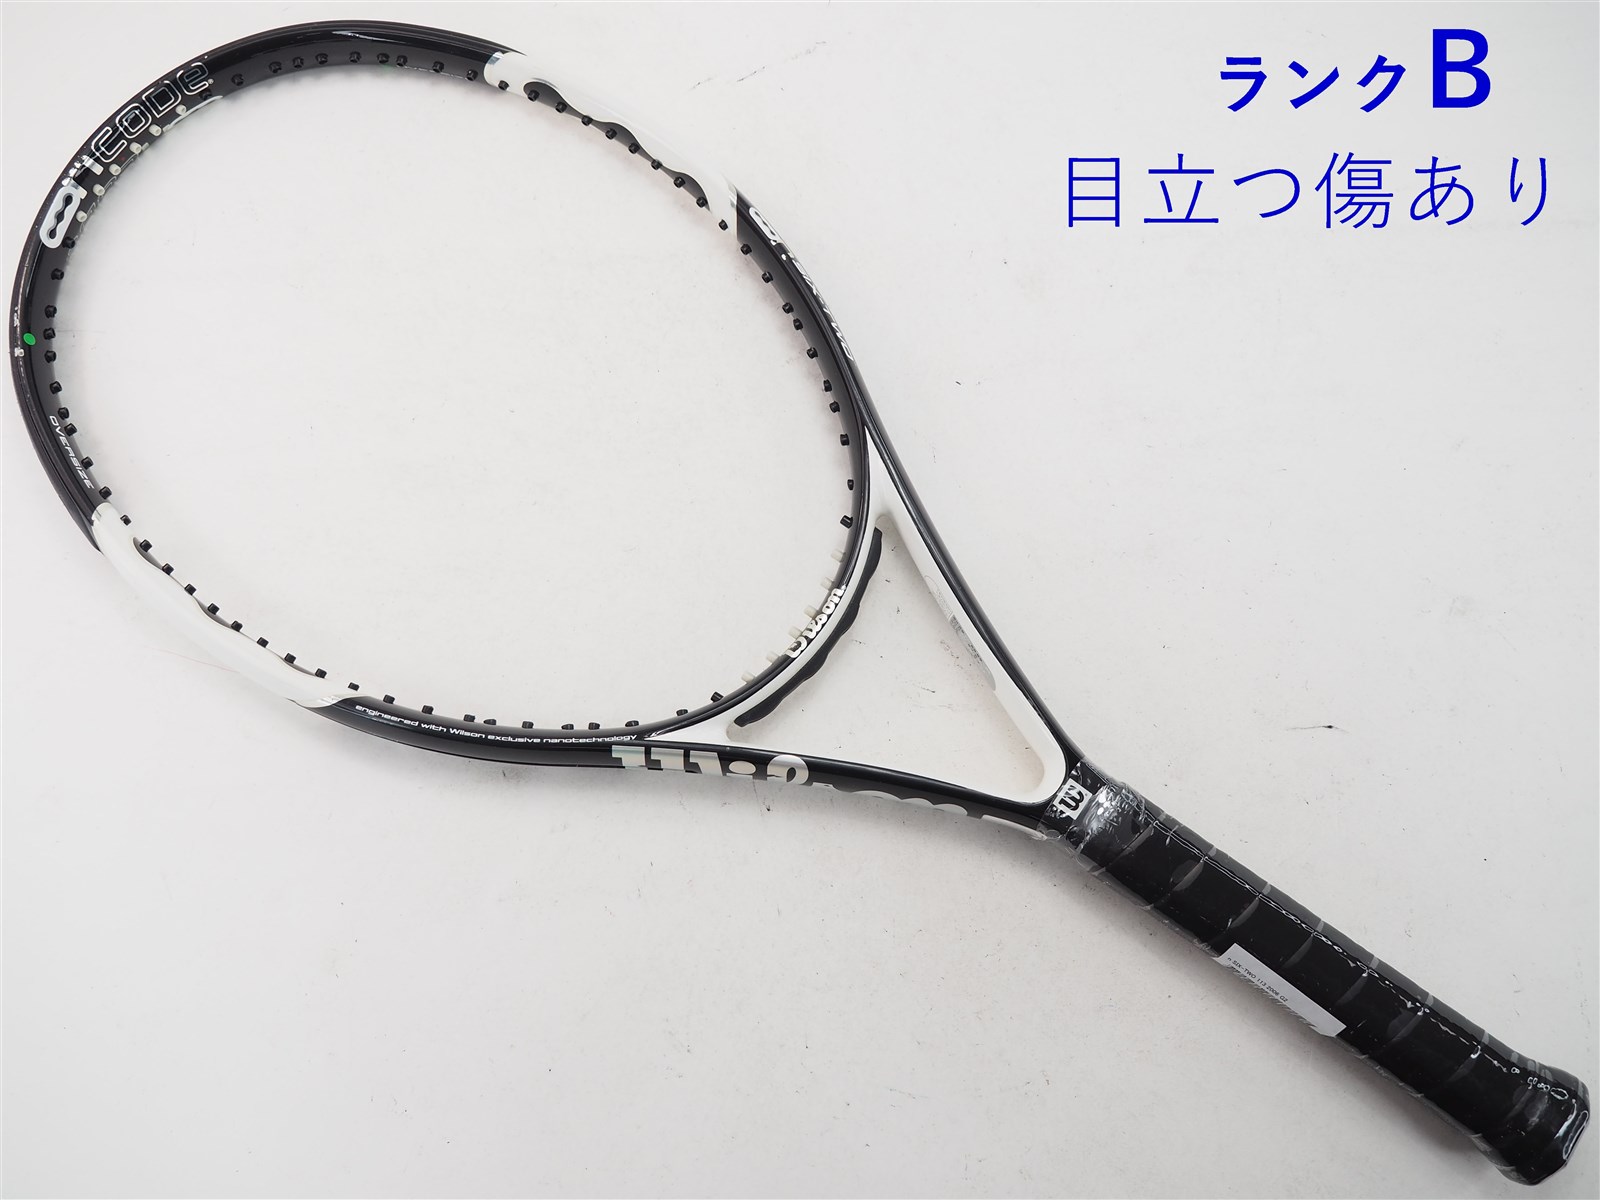 テニスラケット ウィルソン エヌ シックスツー 113 2006年モデル (G2)WILSON n SIX-TWO 113 2006